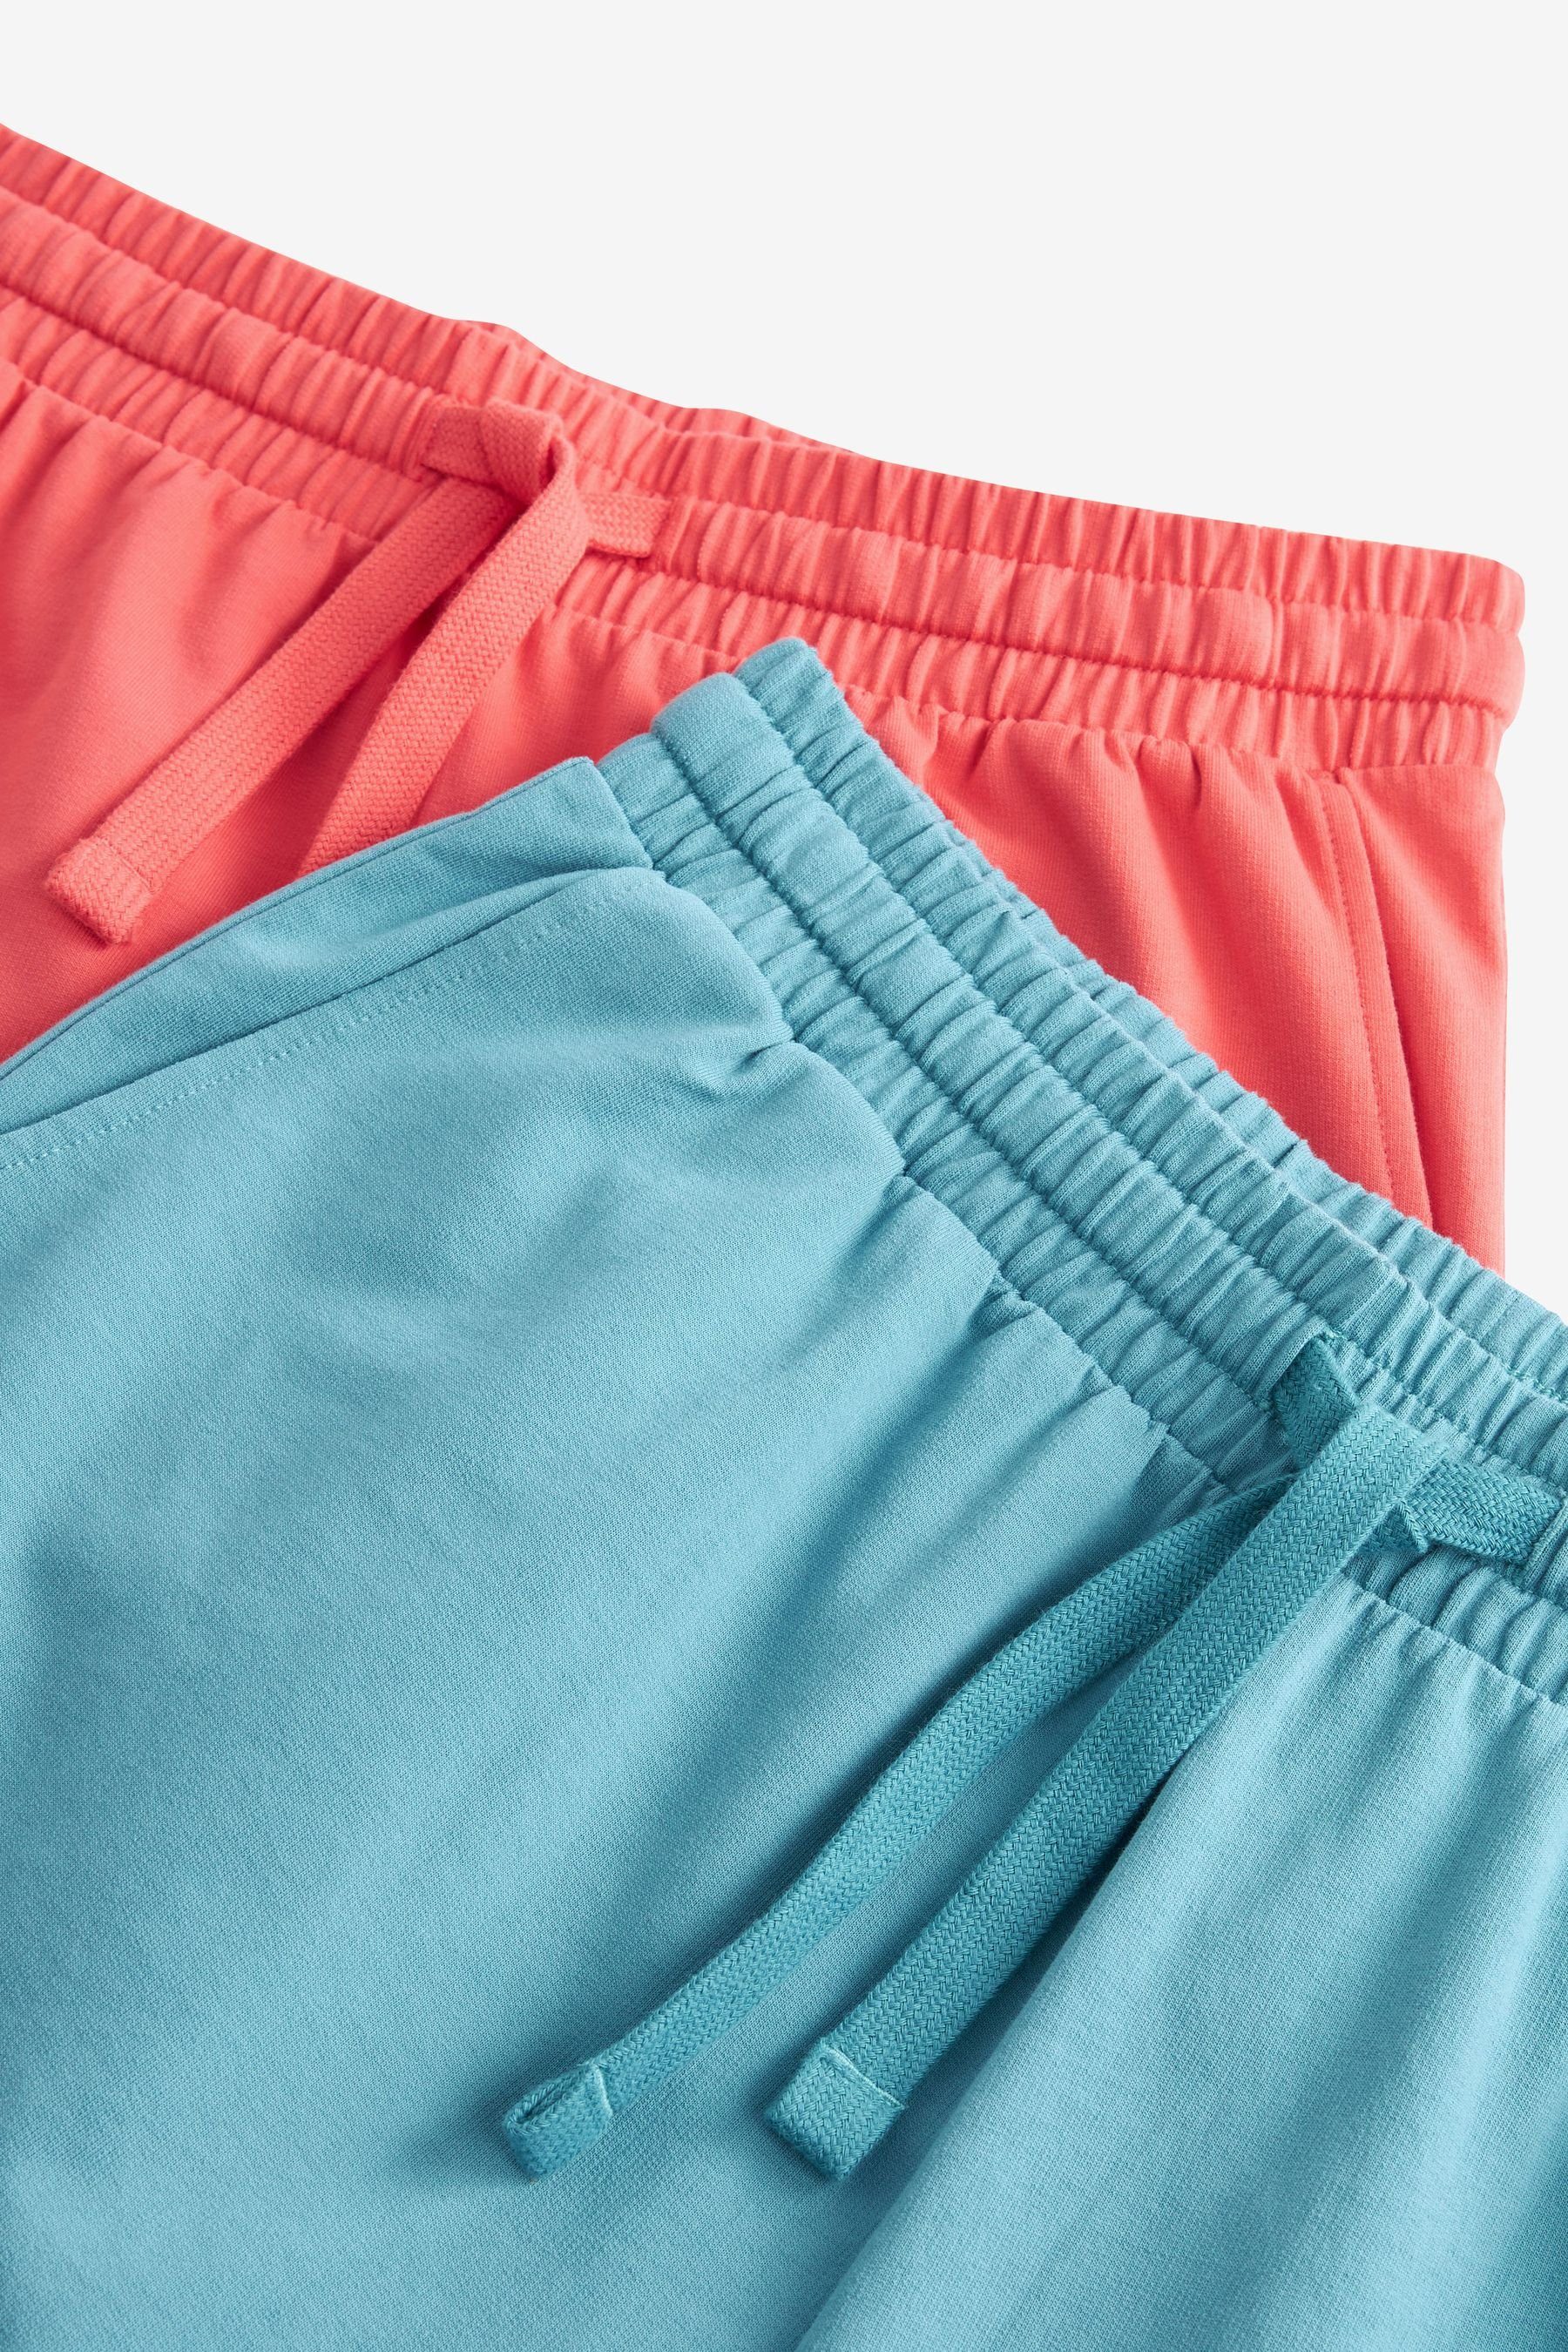 Next Schlafshorts Leichte Shorts, 2er-Pack (2-tlg) Pink/Blue